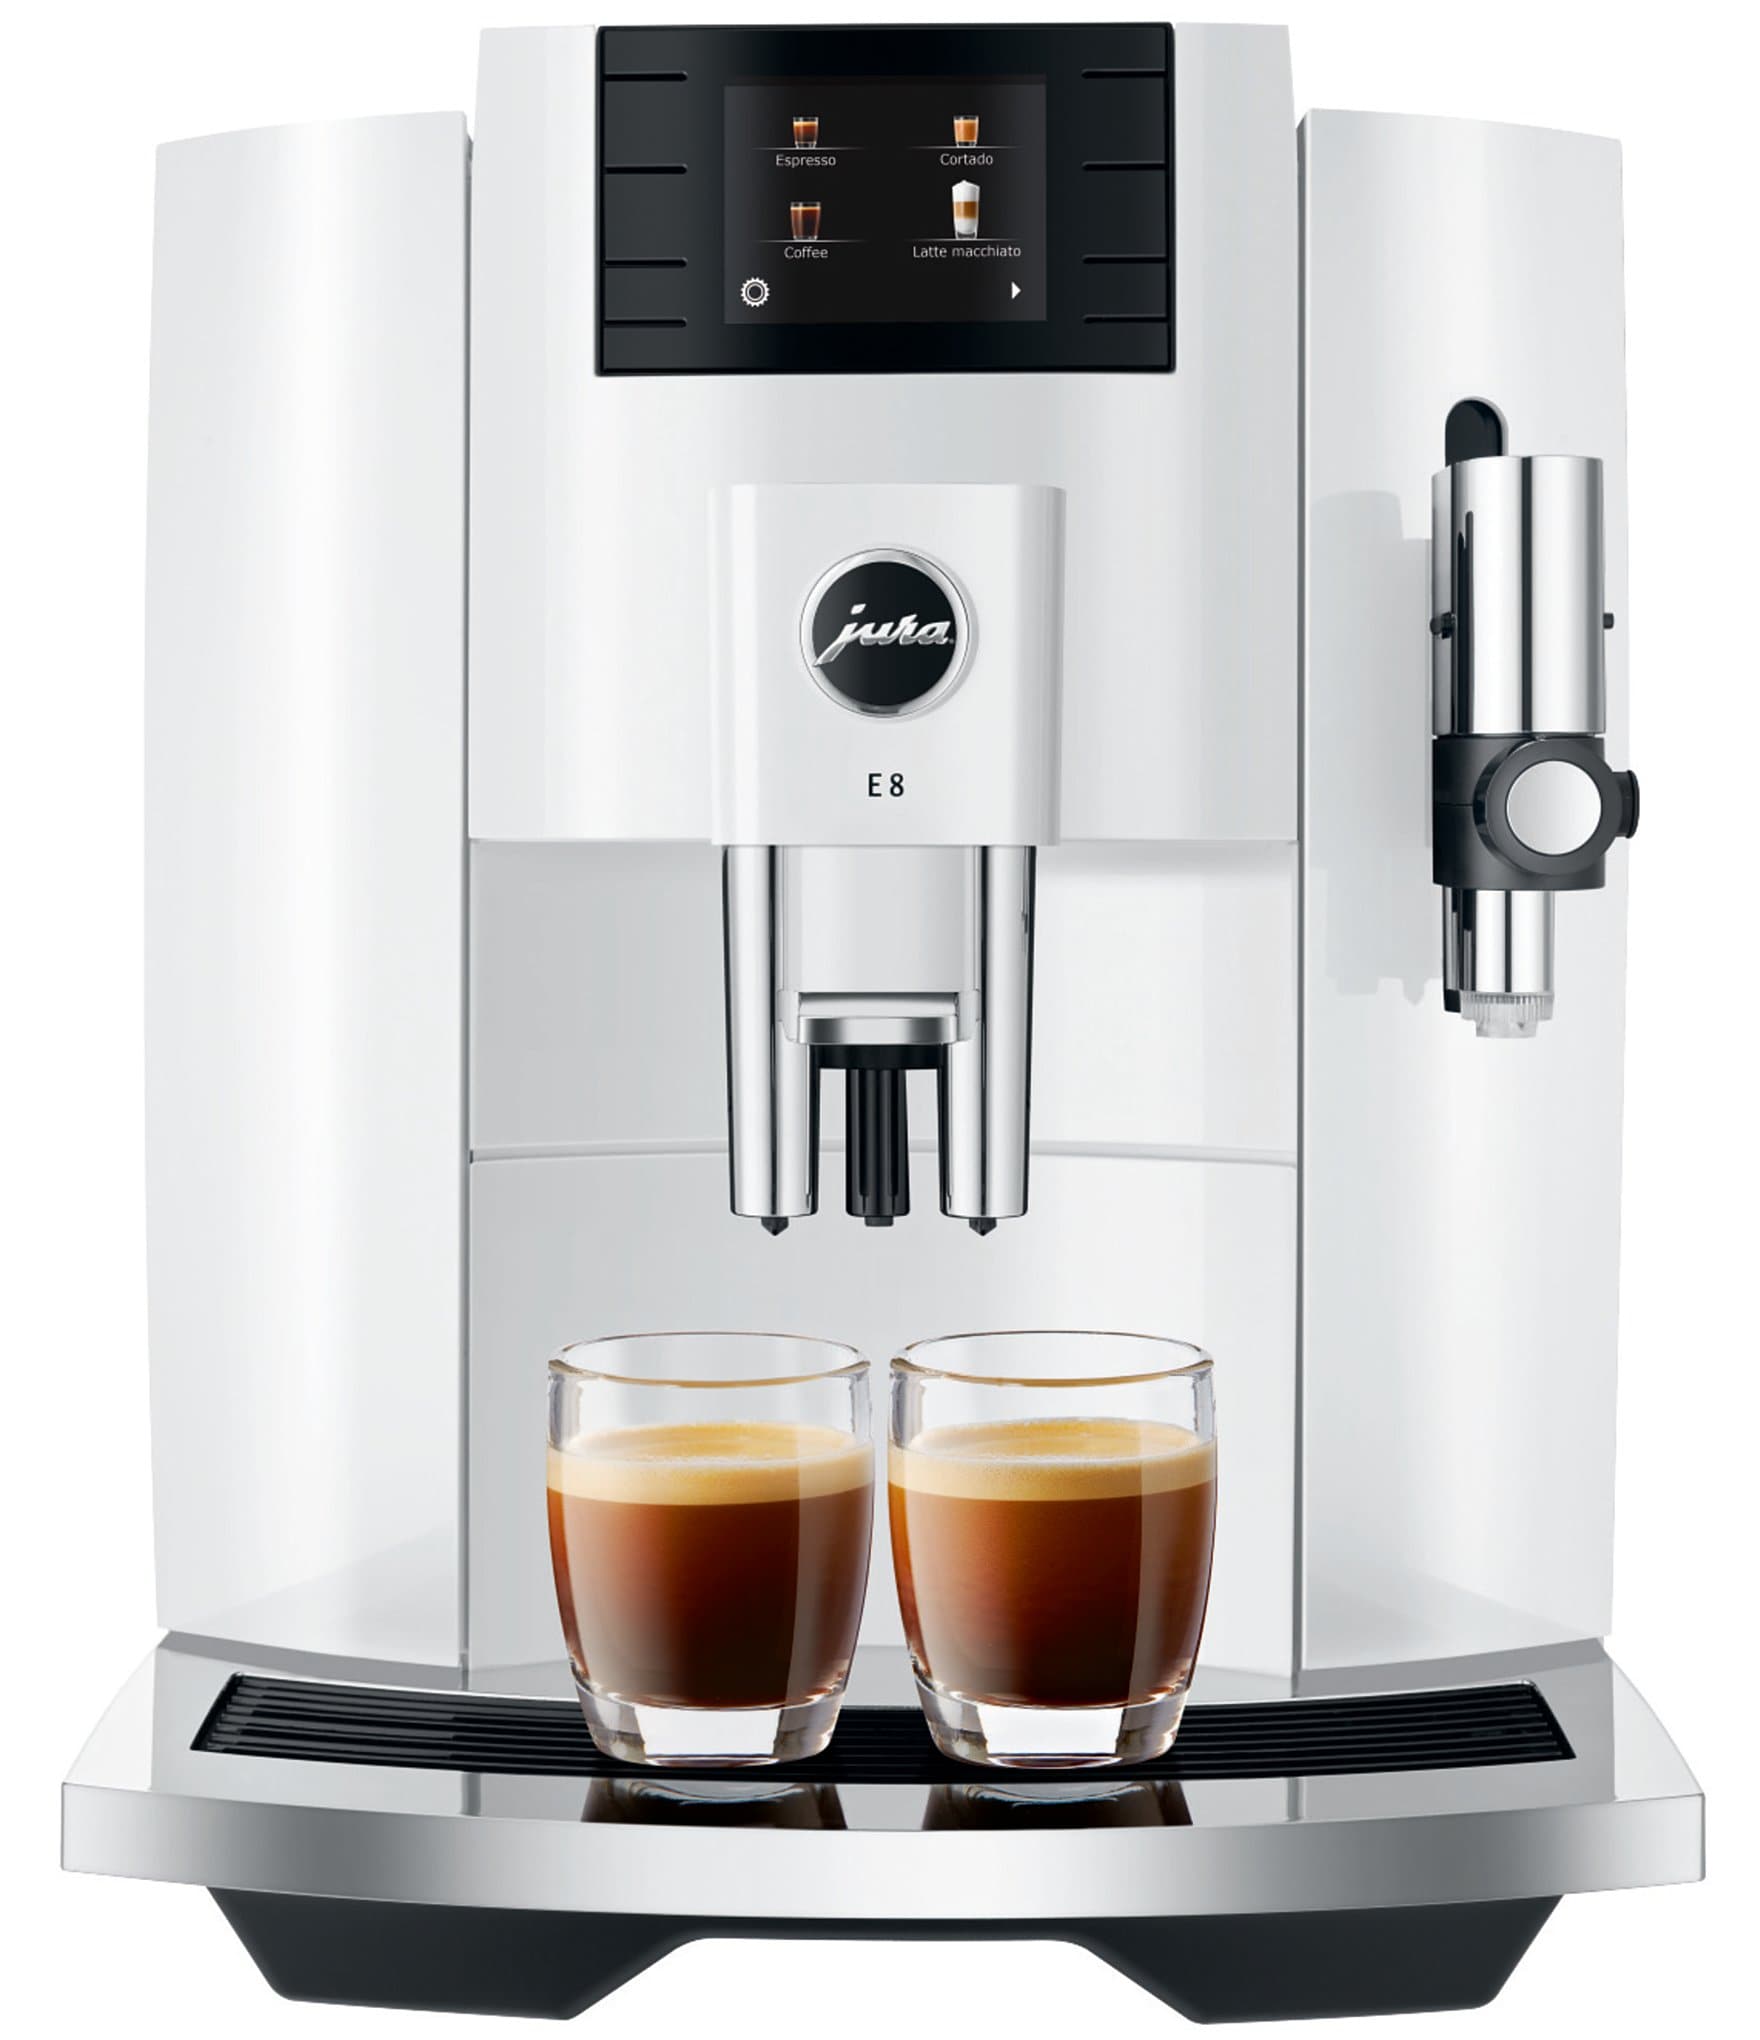 Discreet maagd Smeltend Jura E8 Piano White Automatic Coffee & Espresso Machine | Dillard's